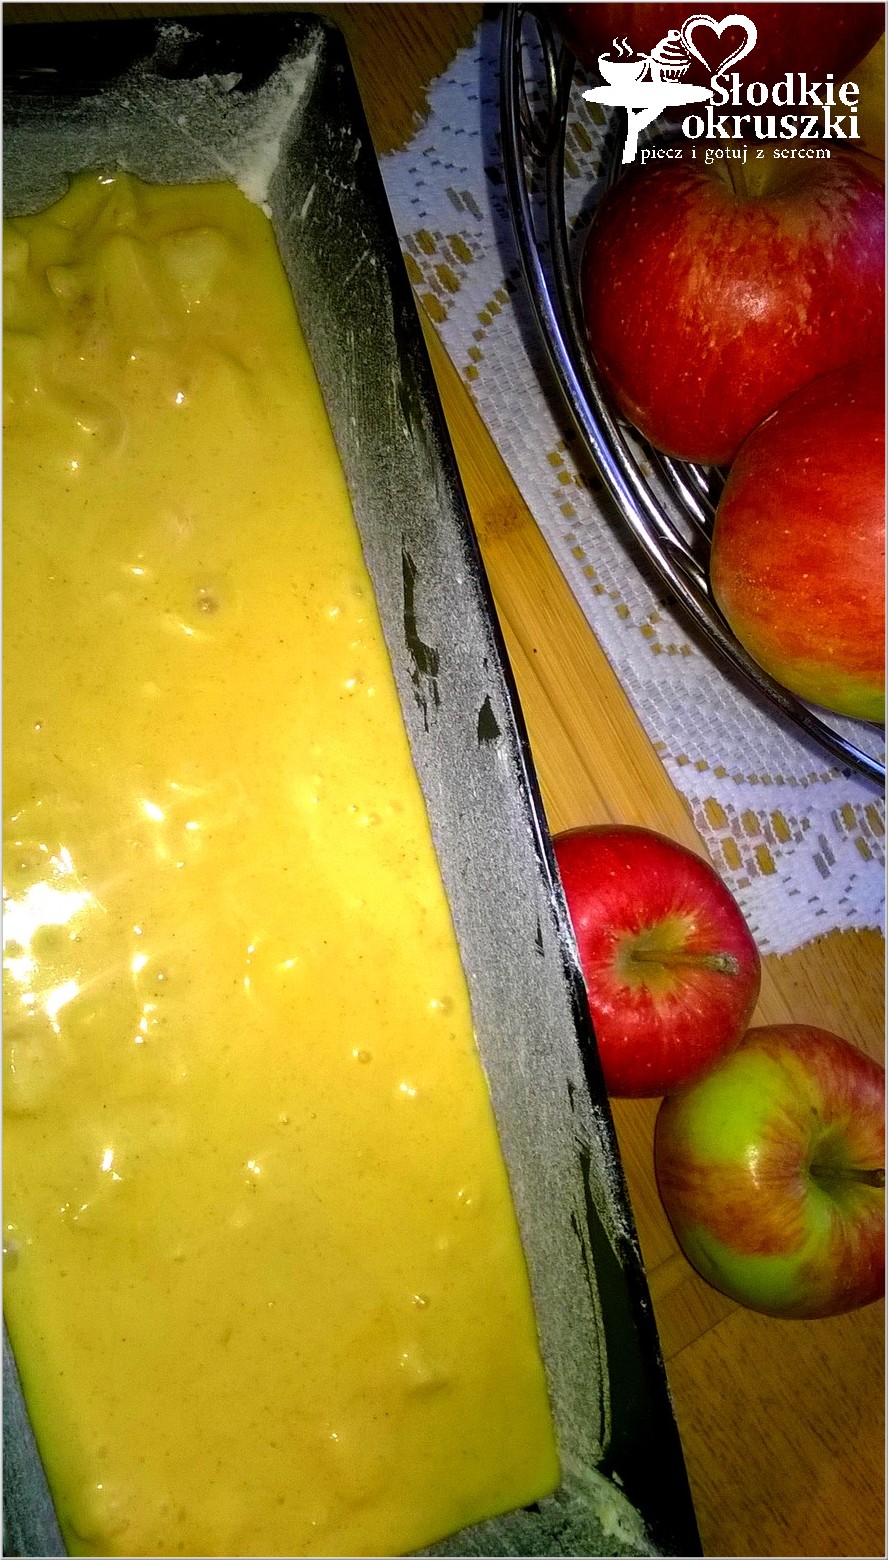 Cynamonowy jabłecznik - przygotowanie